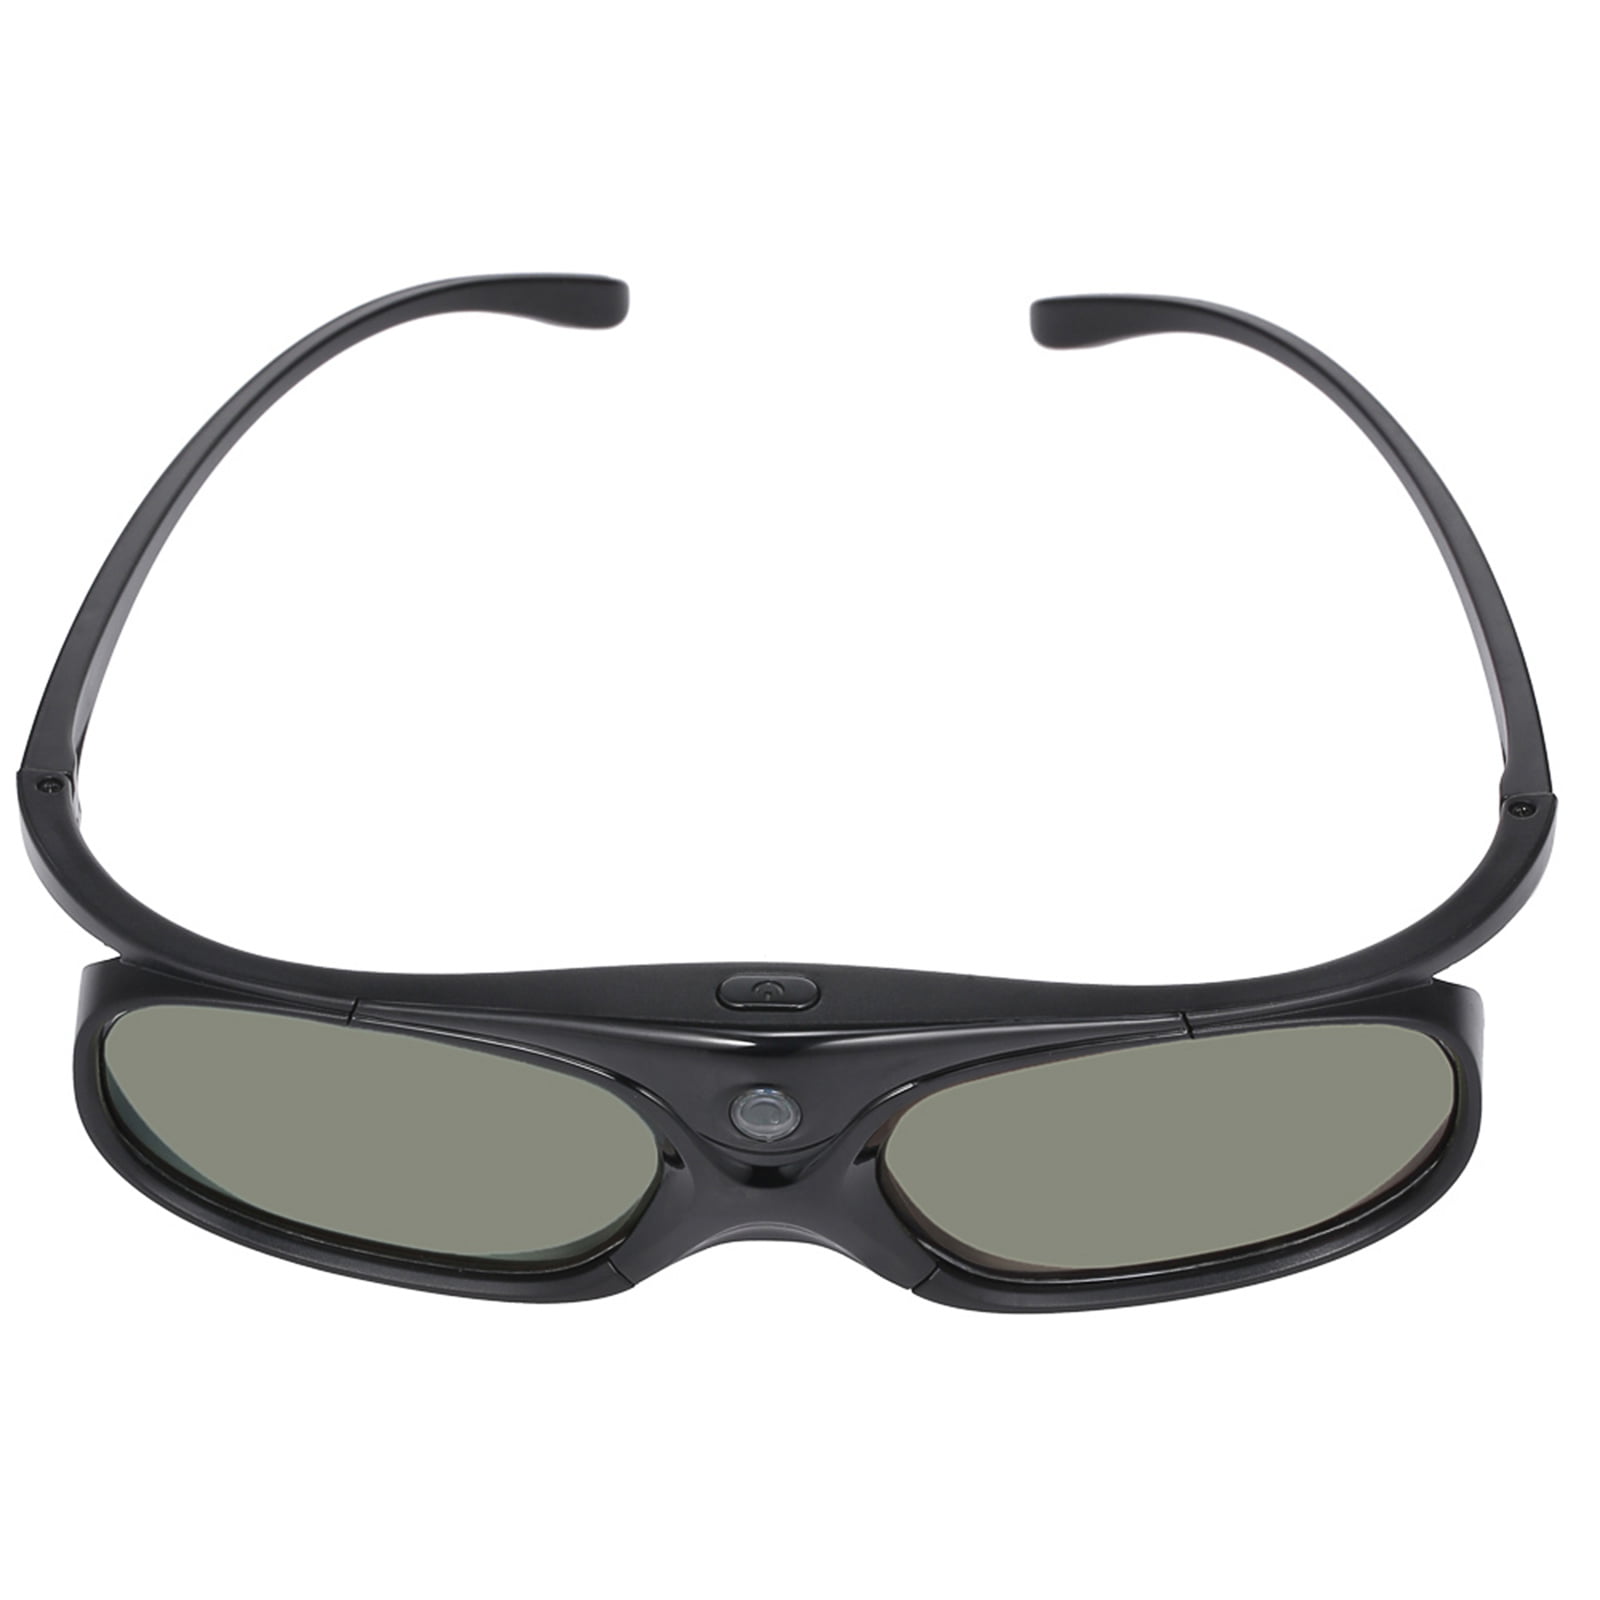 3D Glasses Pack of 2 Rechargeable Active Shutter Eyewear for 3D DLP-Link Projectors Acer BenQ Optoma Viewsonic Philips LG Infocus NEC Jmgo Vivitek Cocar Toumei 